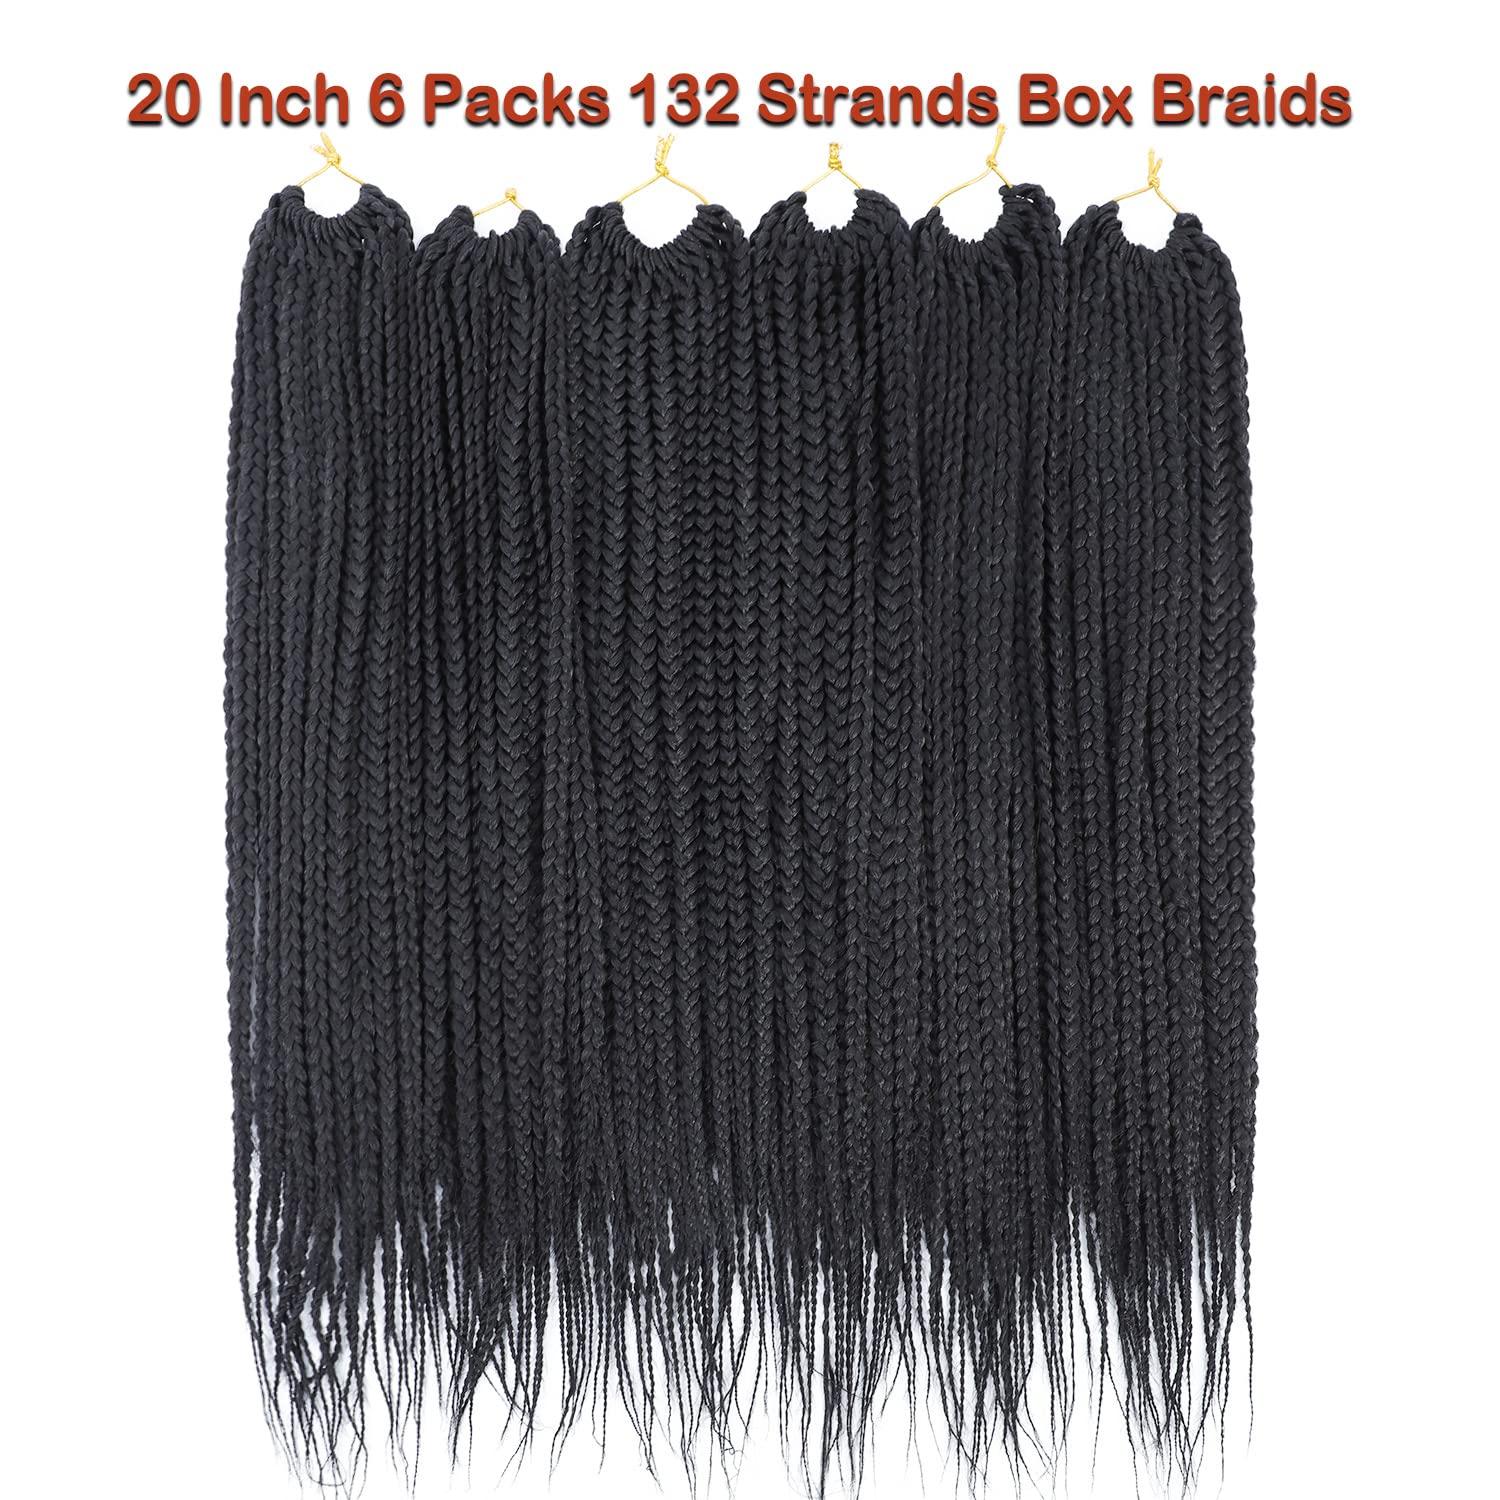  9 inch Ocean Wave Crochet Hair for Black Women Short